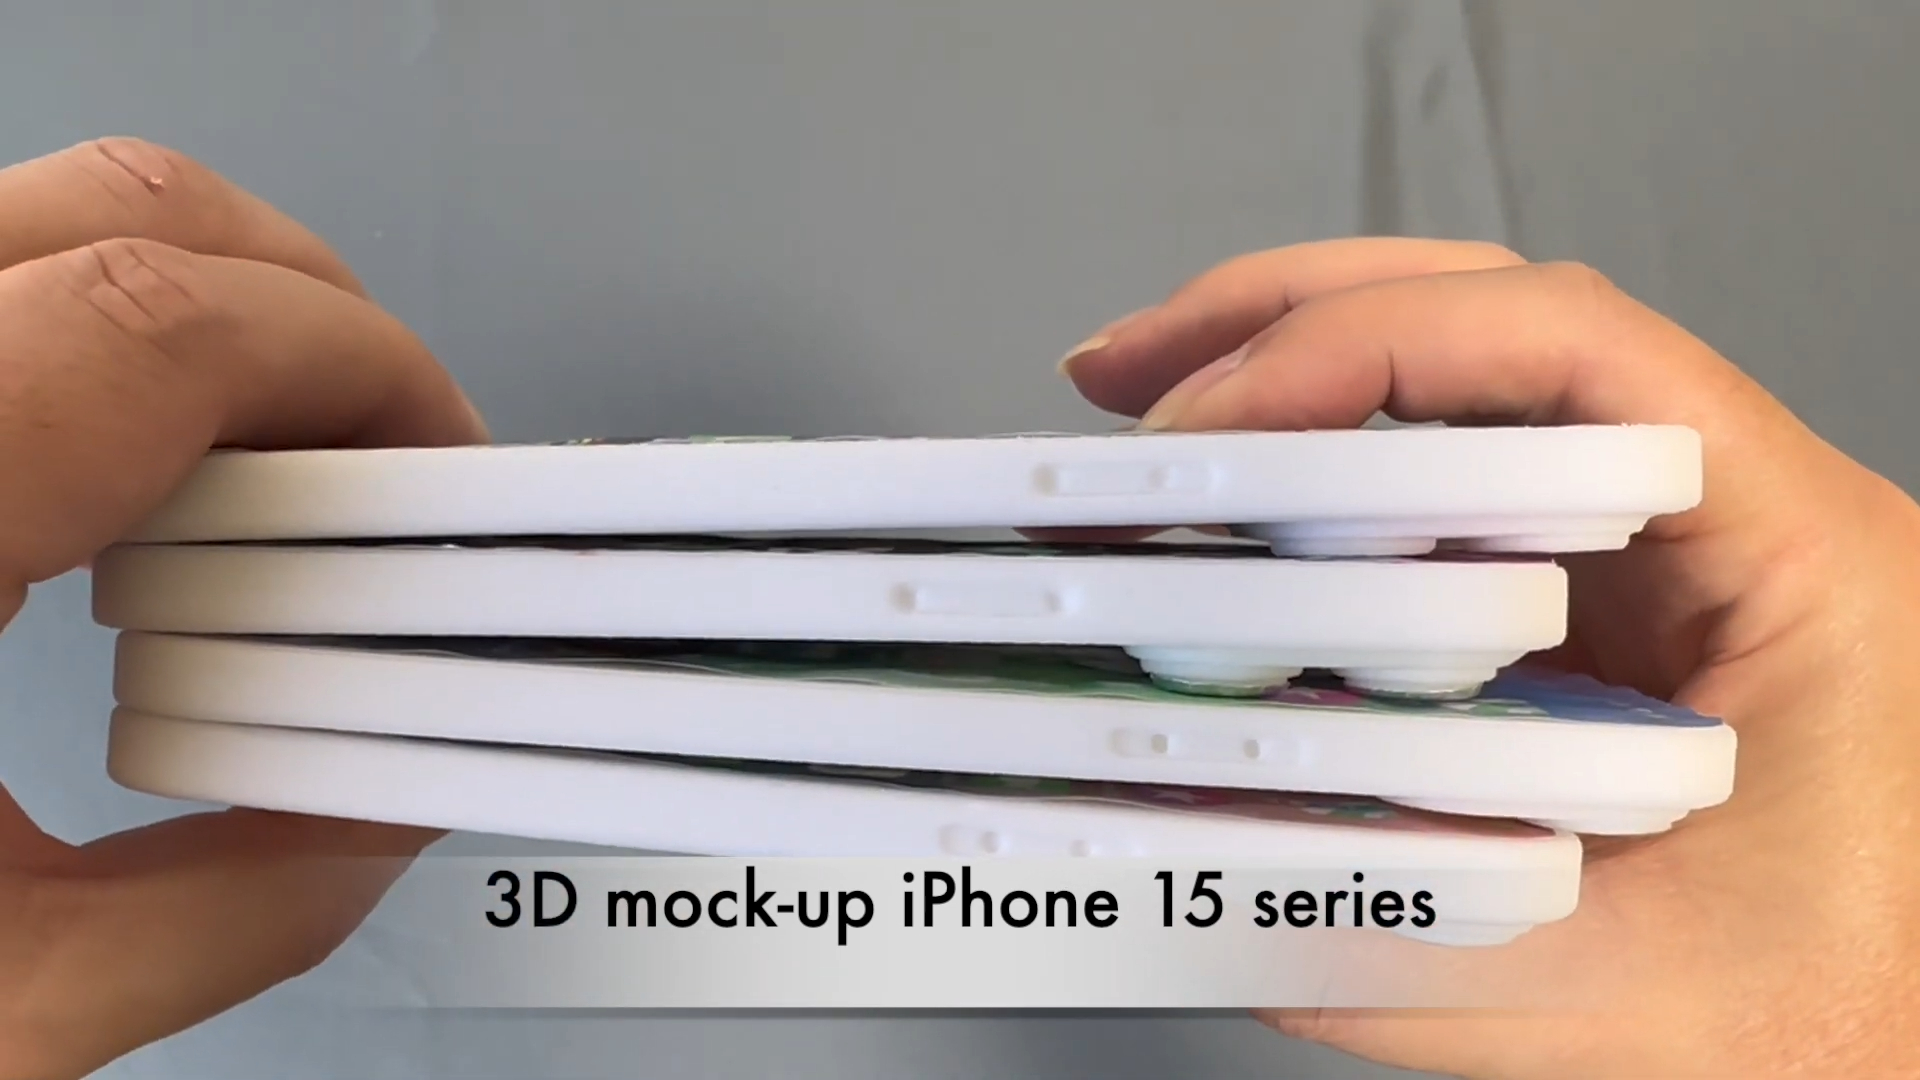 Mô hình bộ 4 iPhone 15 lần đầu lộ diện thực tế: Viền siêu mỏng, chốt thiết kế siêu sang - ảnh 9